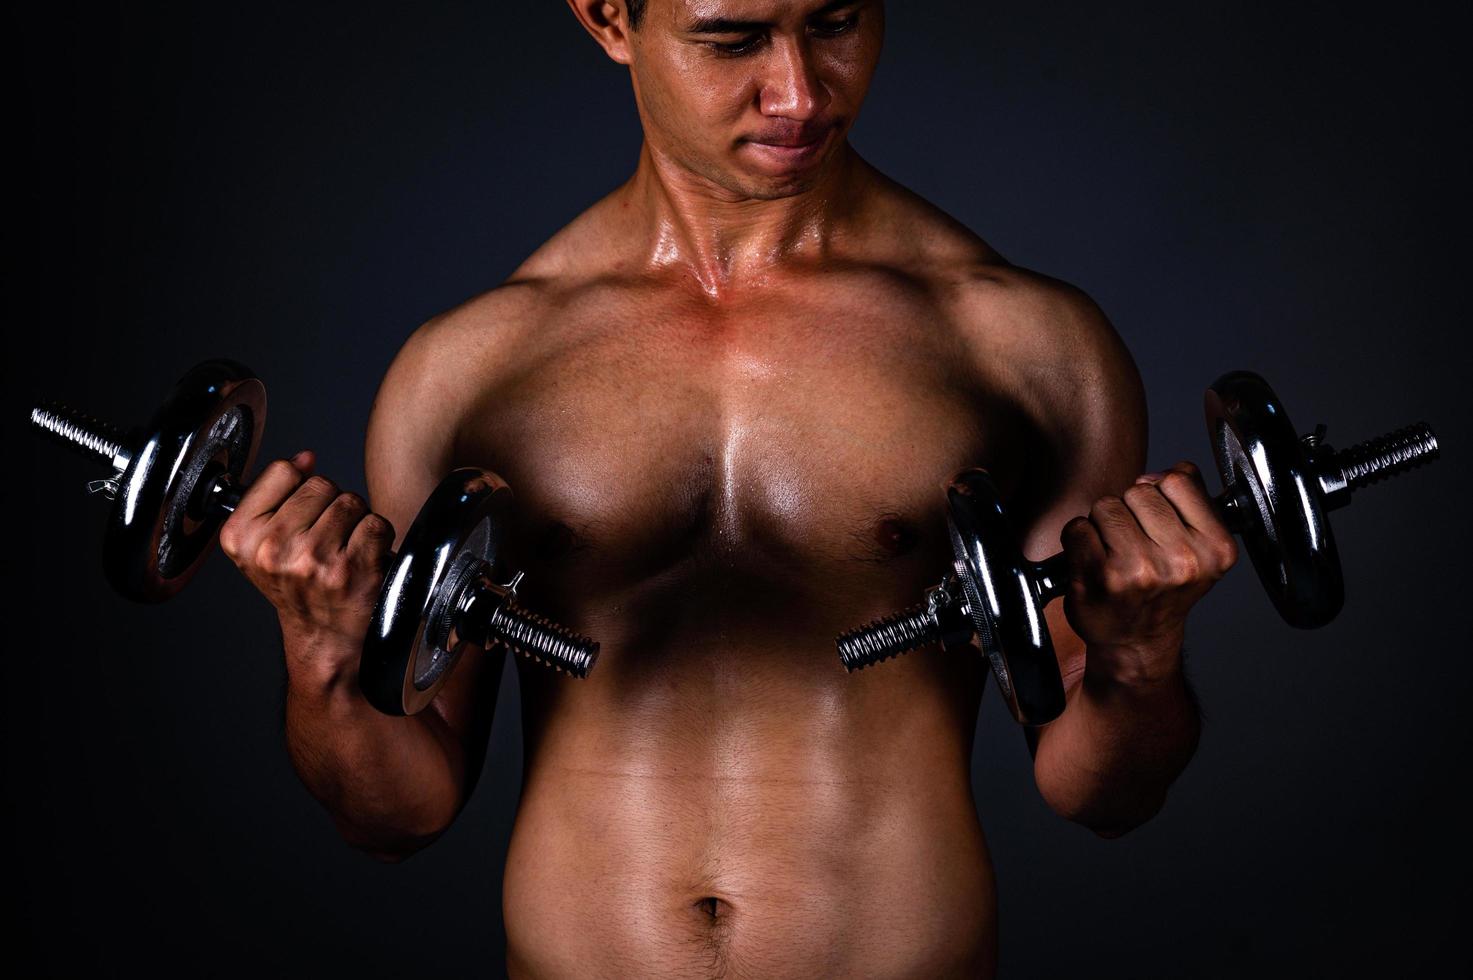 Der starke Asiate hob regelmäßig seine Hantel, um seine Muskeln stark und schön zu halten foto